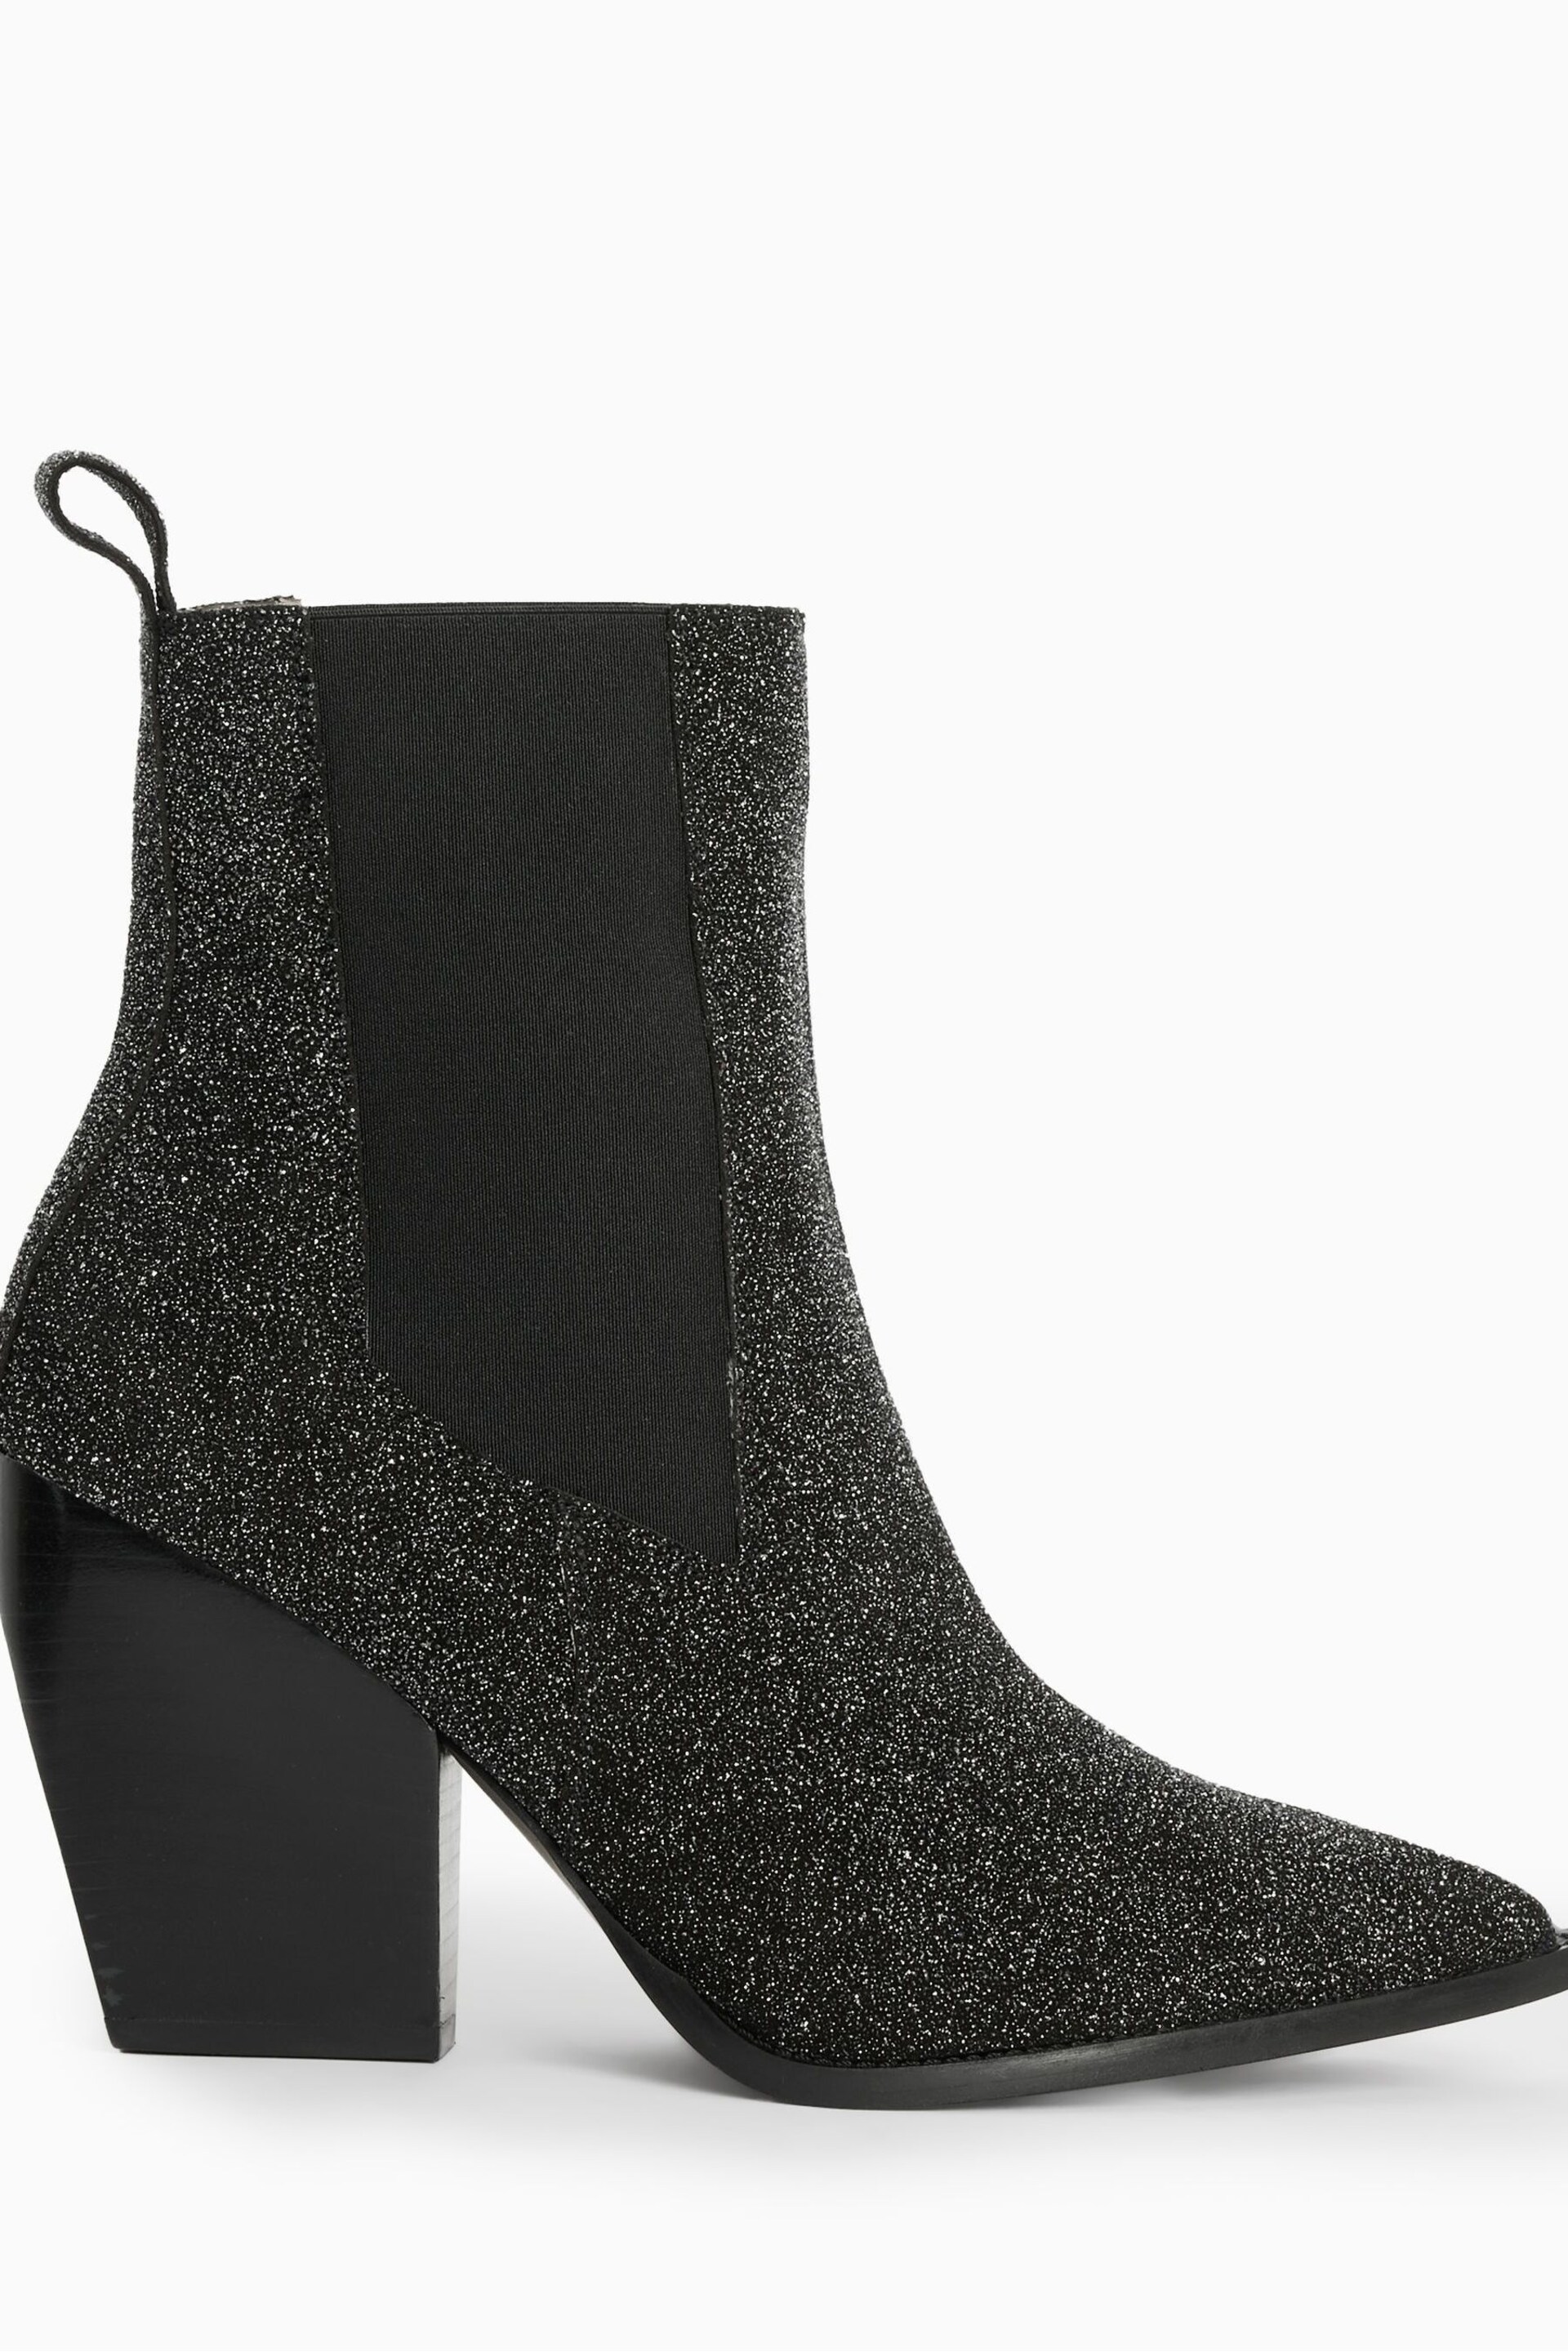 AllSaints Black Sparkle Ria Boots - Image 1 of 7